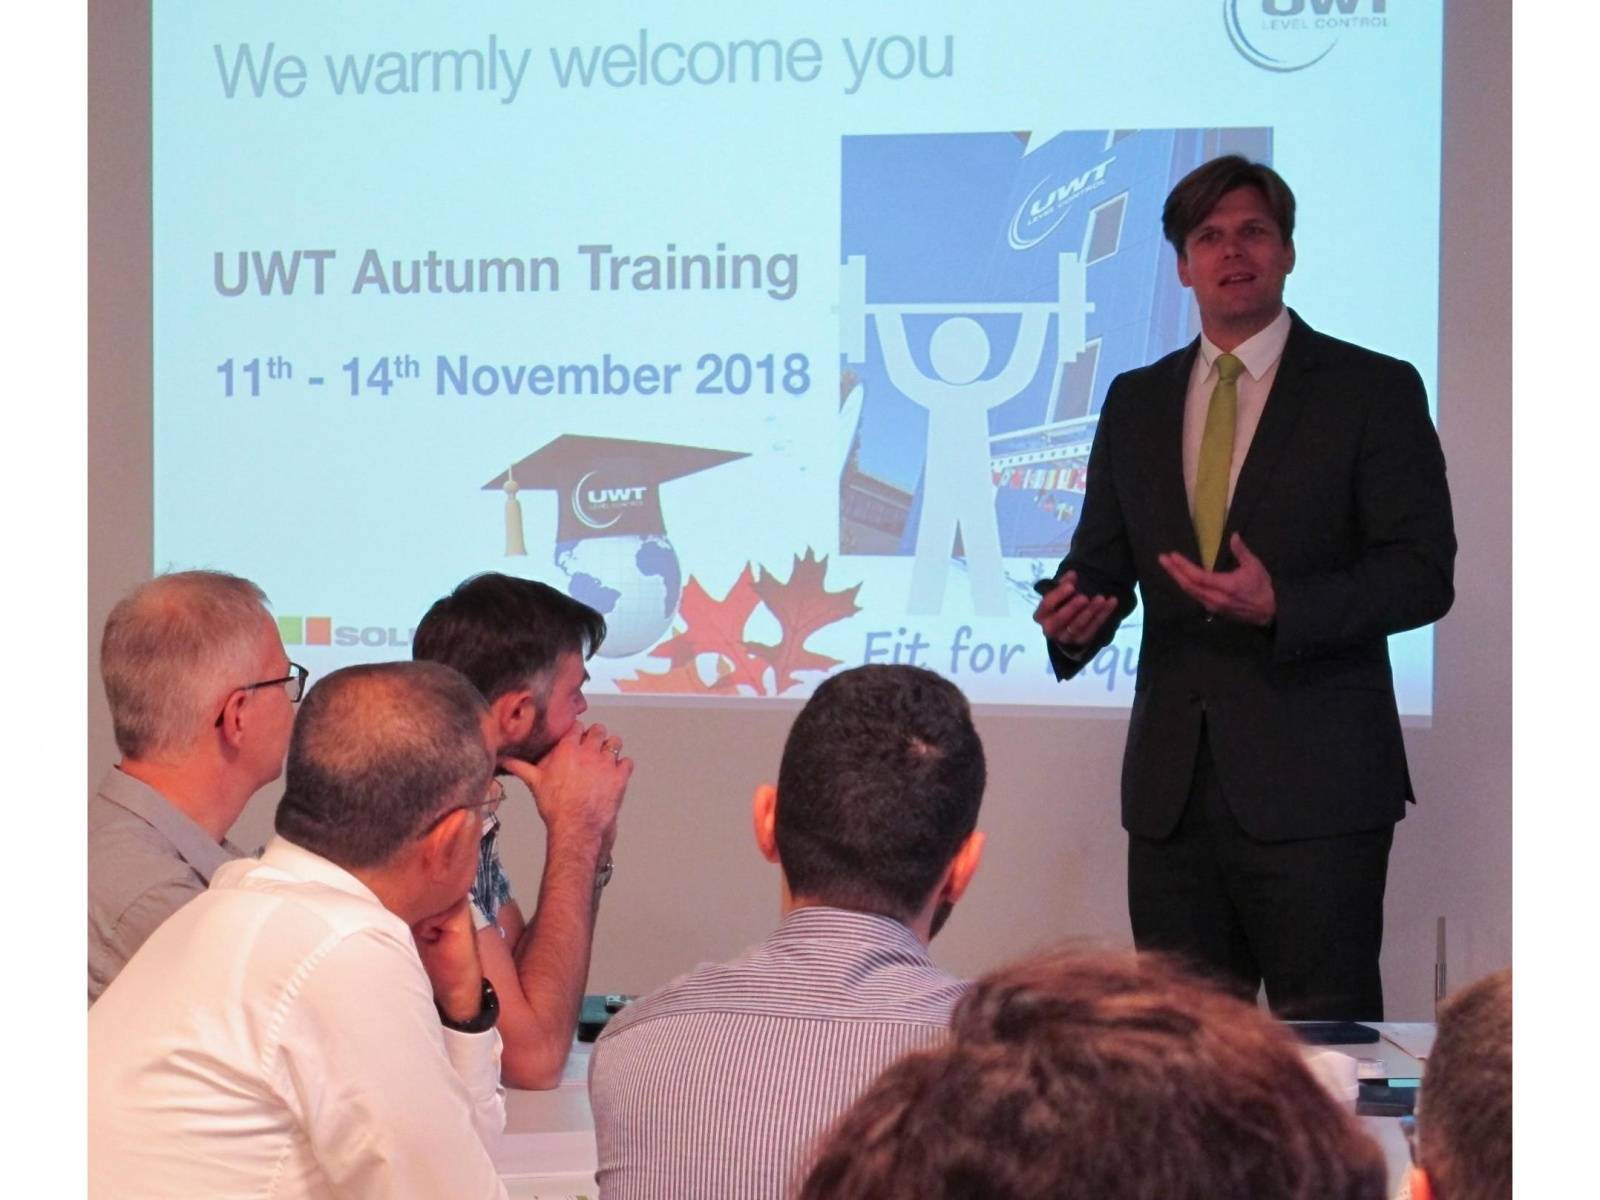 UWT empfängt alljährlich zum Herbst Training  40 Teilnehmer aus aller Welt nehmen am Event teil